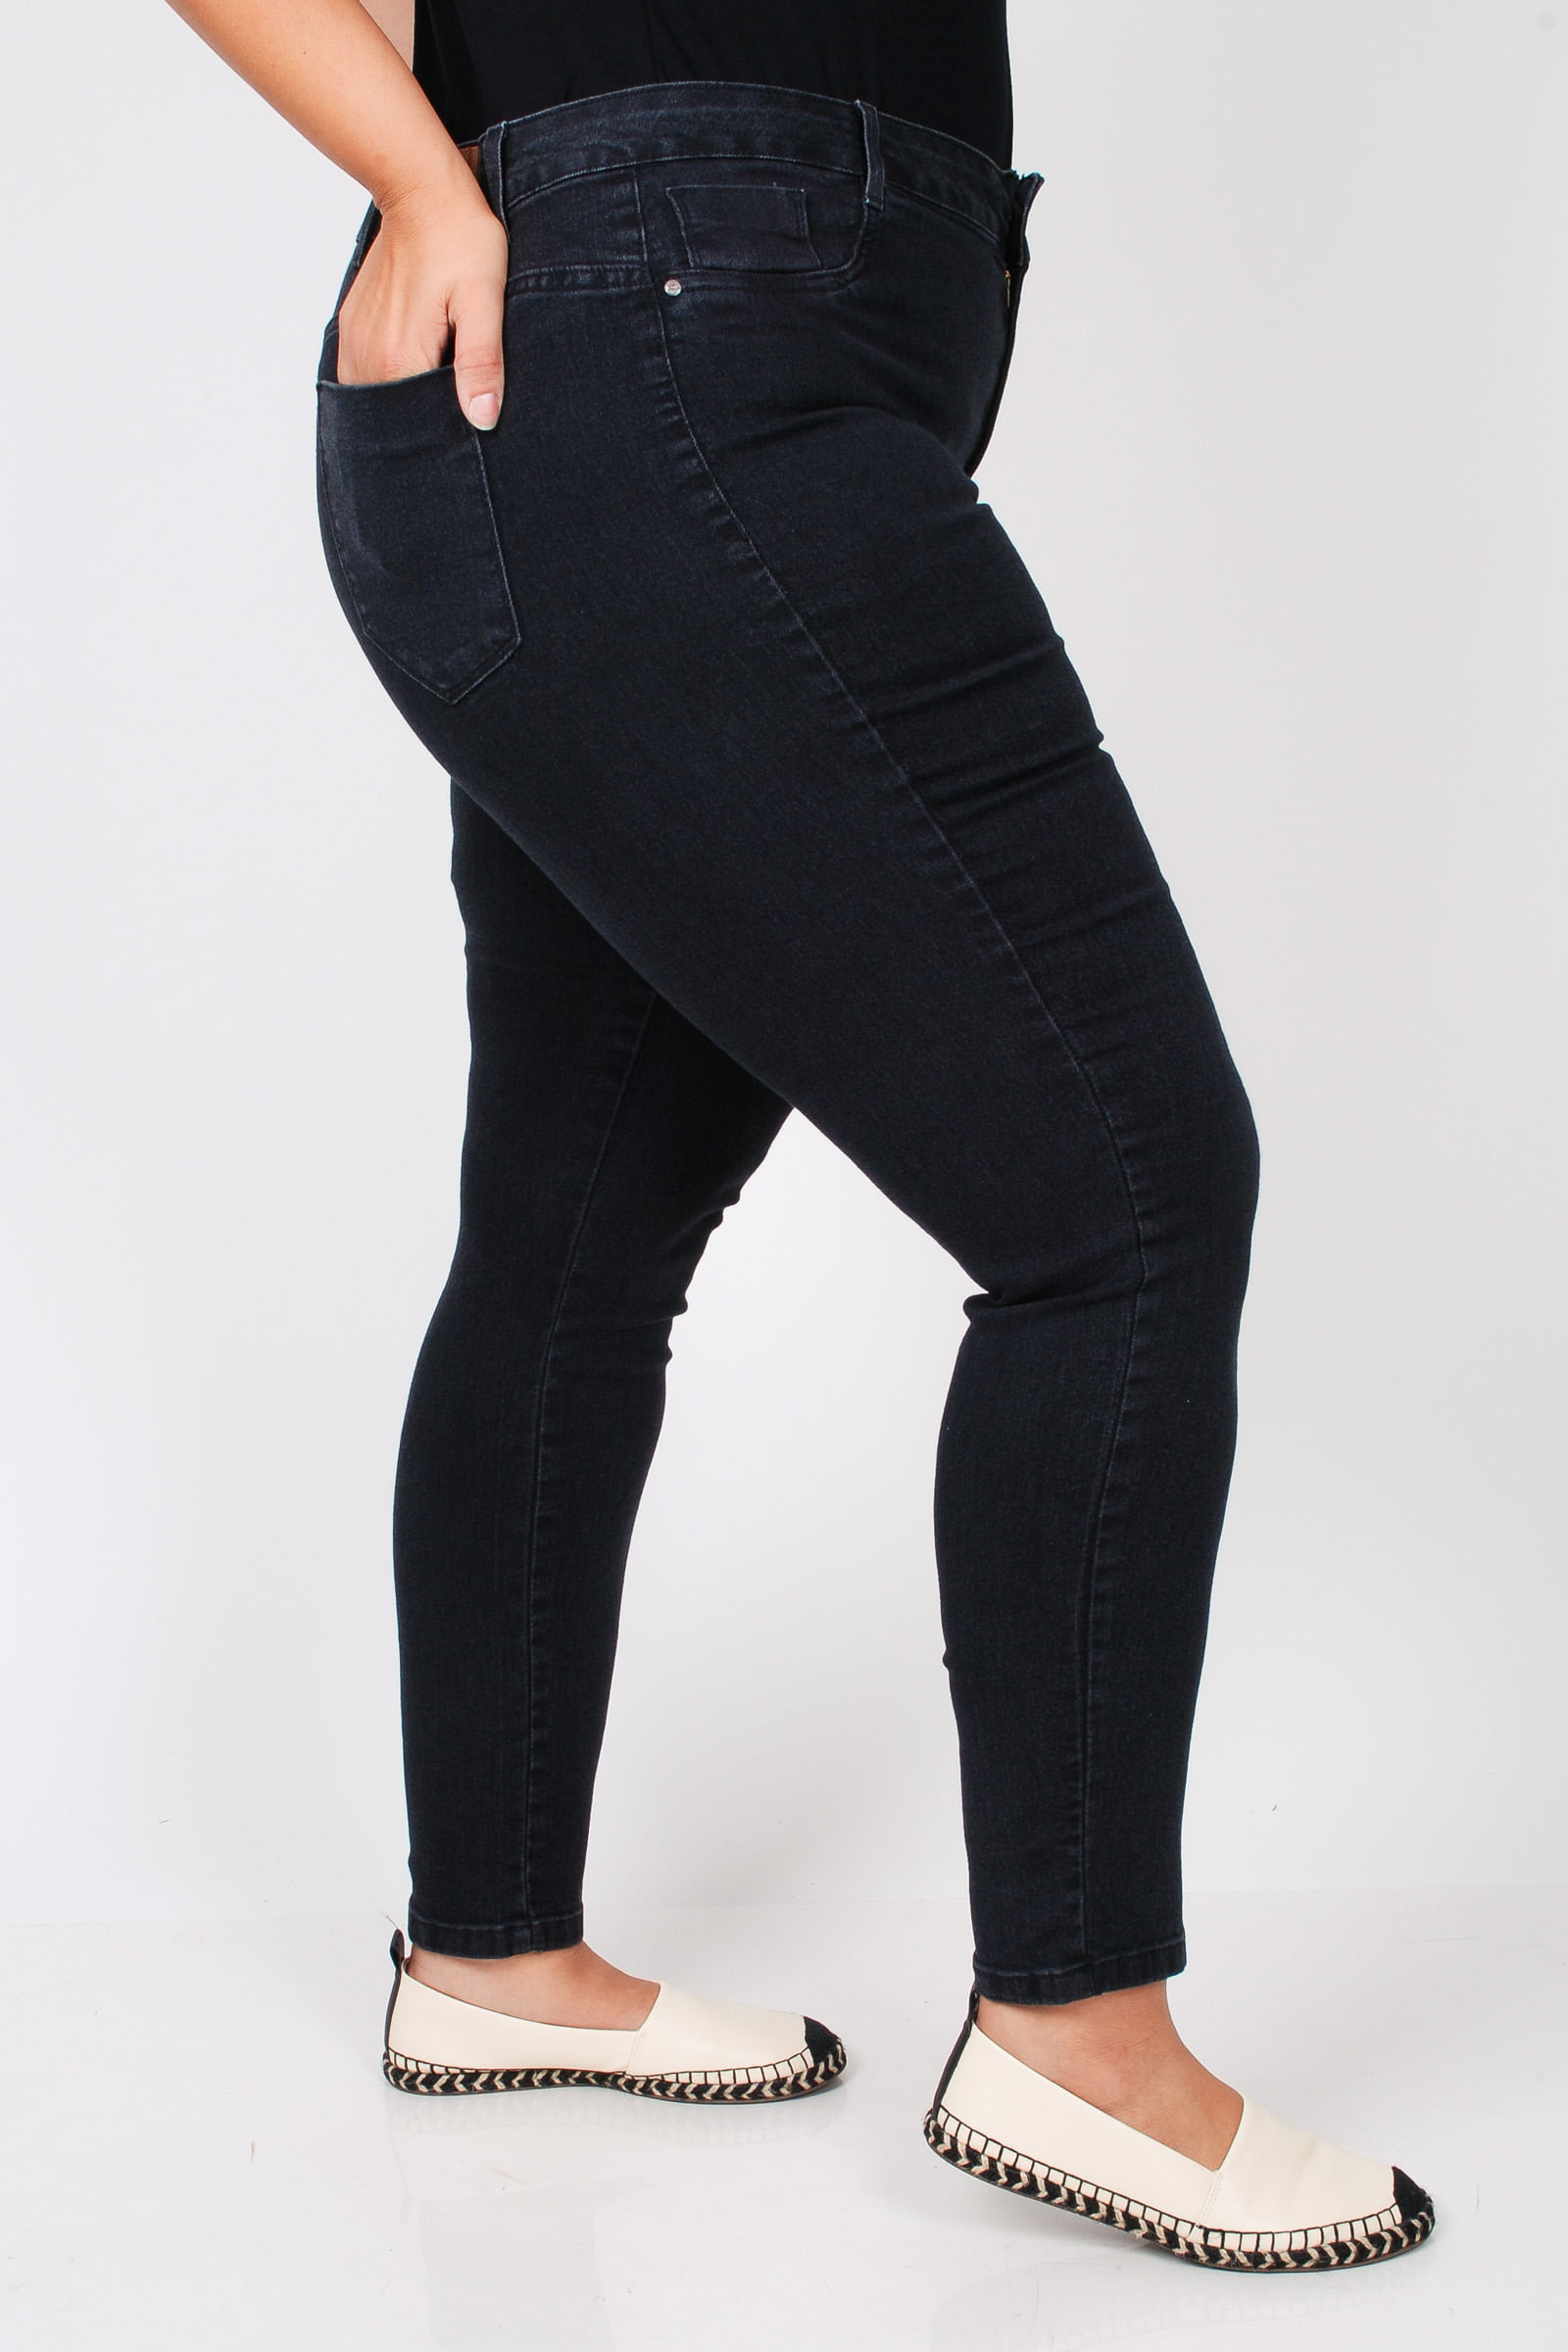 Calca-skinny-black-jeans-plus-size_0103_3